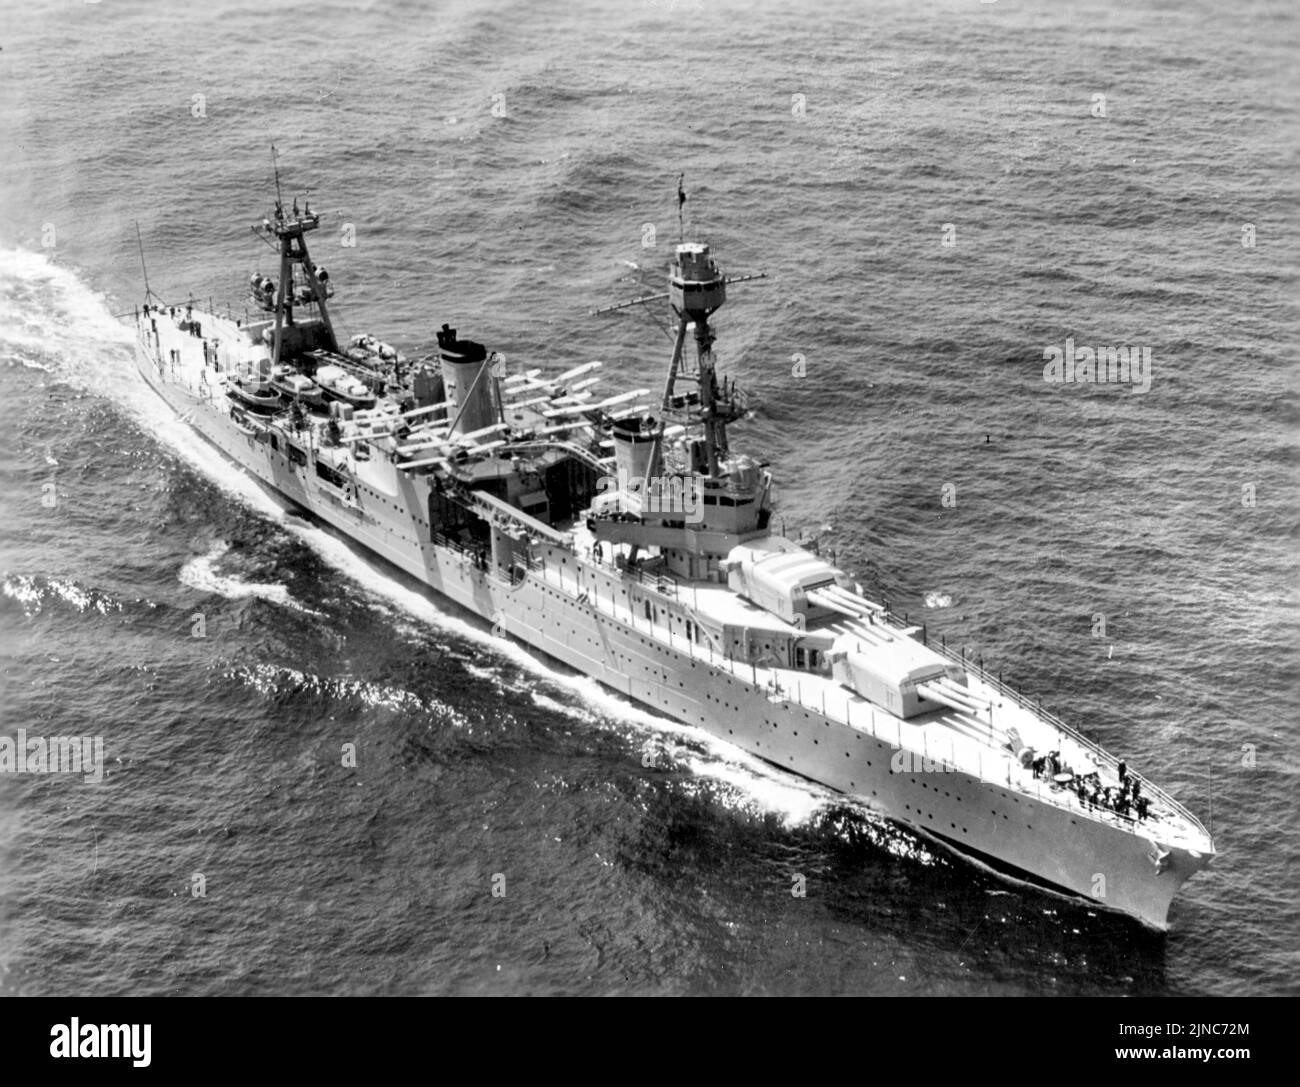 Le croiseur lourd USS Chicago (CA-29) de la Marine américaine est en cours au large de New York, au cours de l'examen de la flotte le 31 mai 1934. Banque D'Images